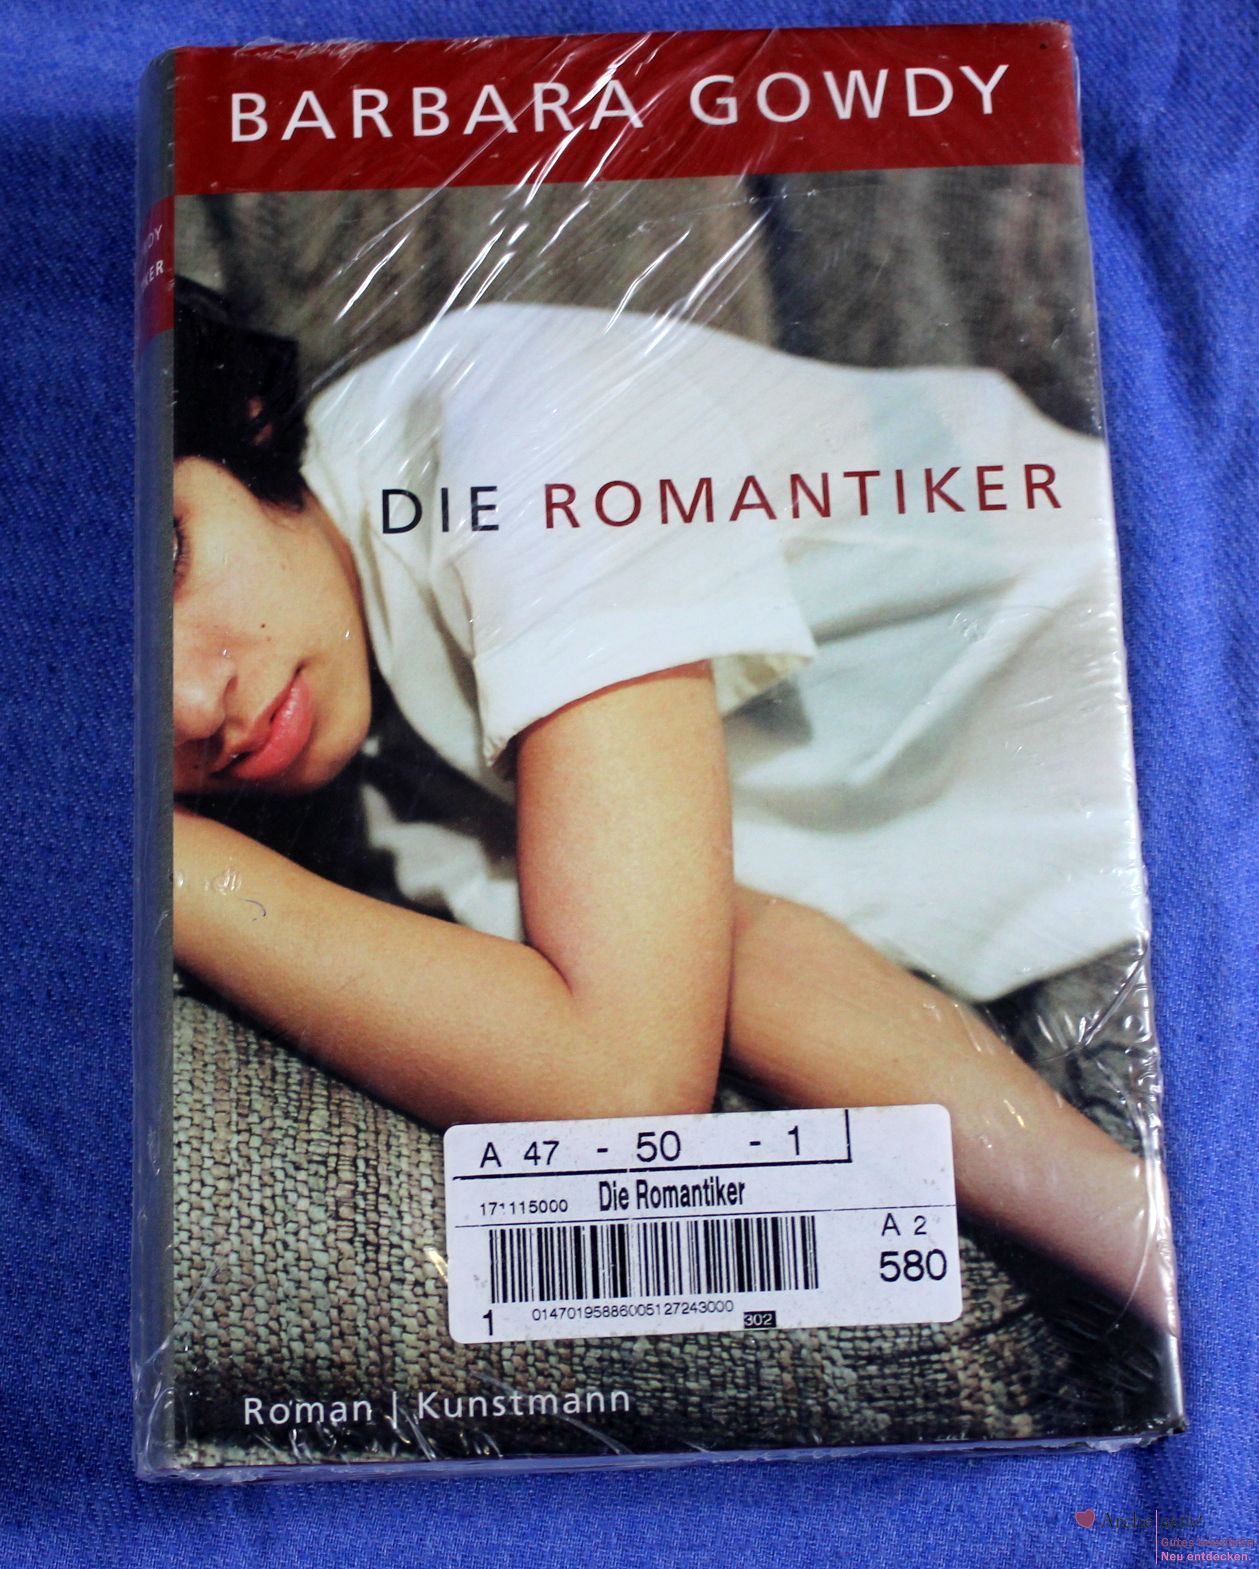 Barbara Gowdy: Die Romantiker, Roman, gebundene Aufl., Verlag Kunstmann - neu, OVP